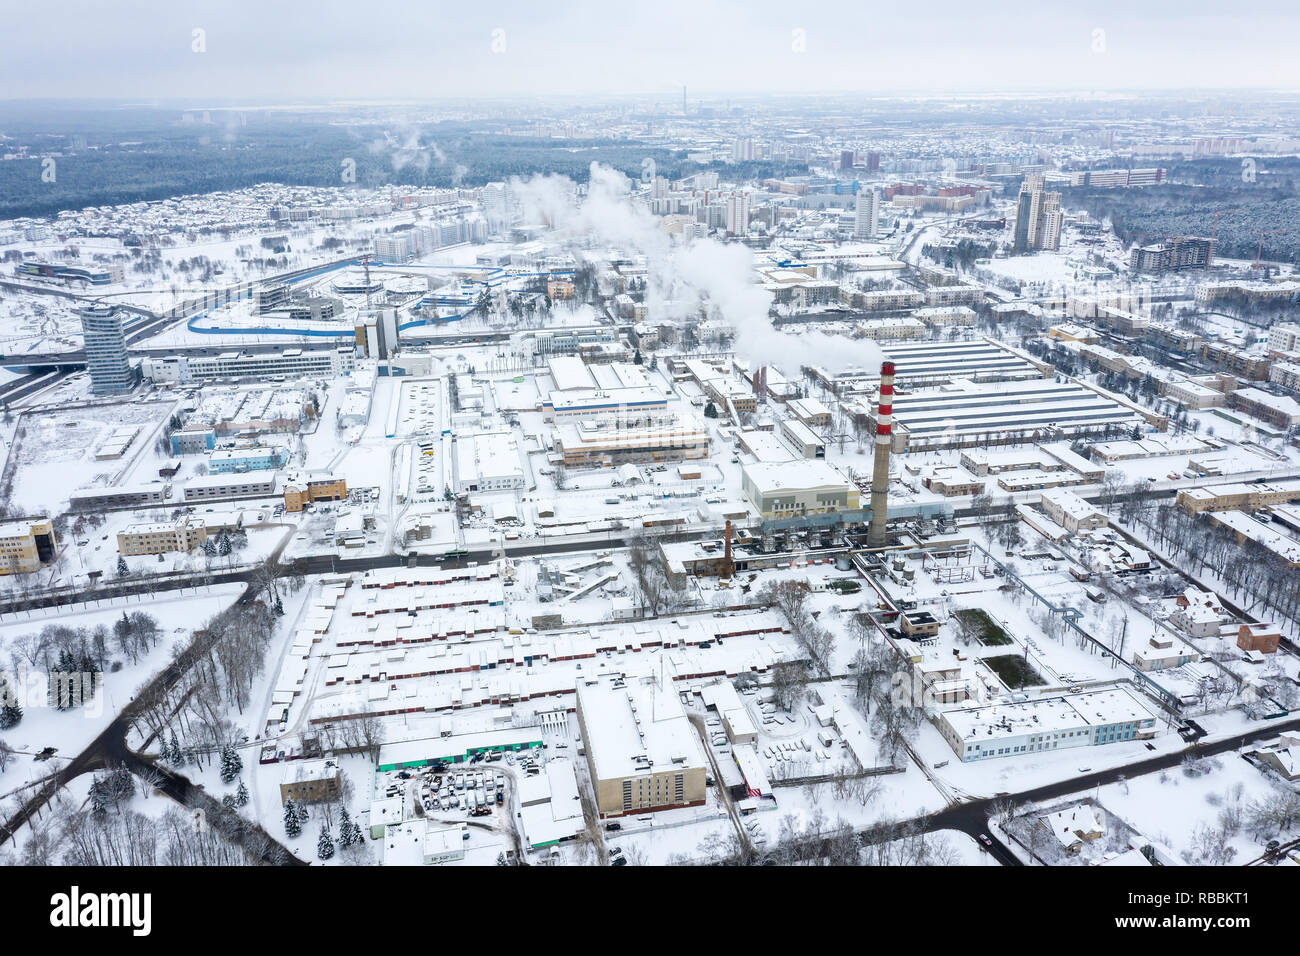 Vue aérienne de la zone industrielle de la ville. saison d'hiver Banque D'Images